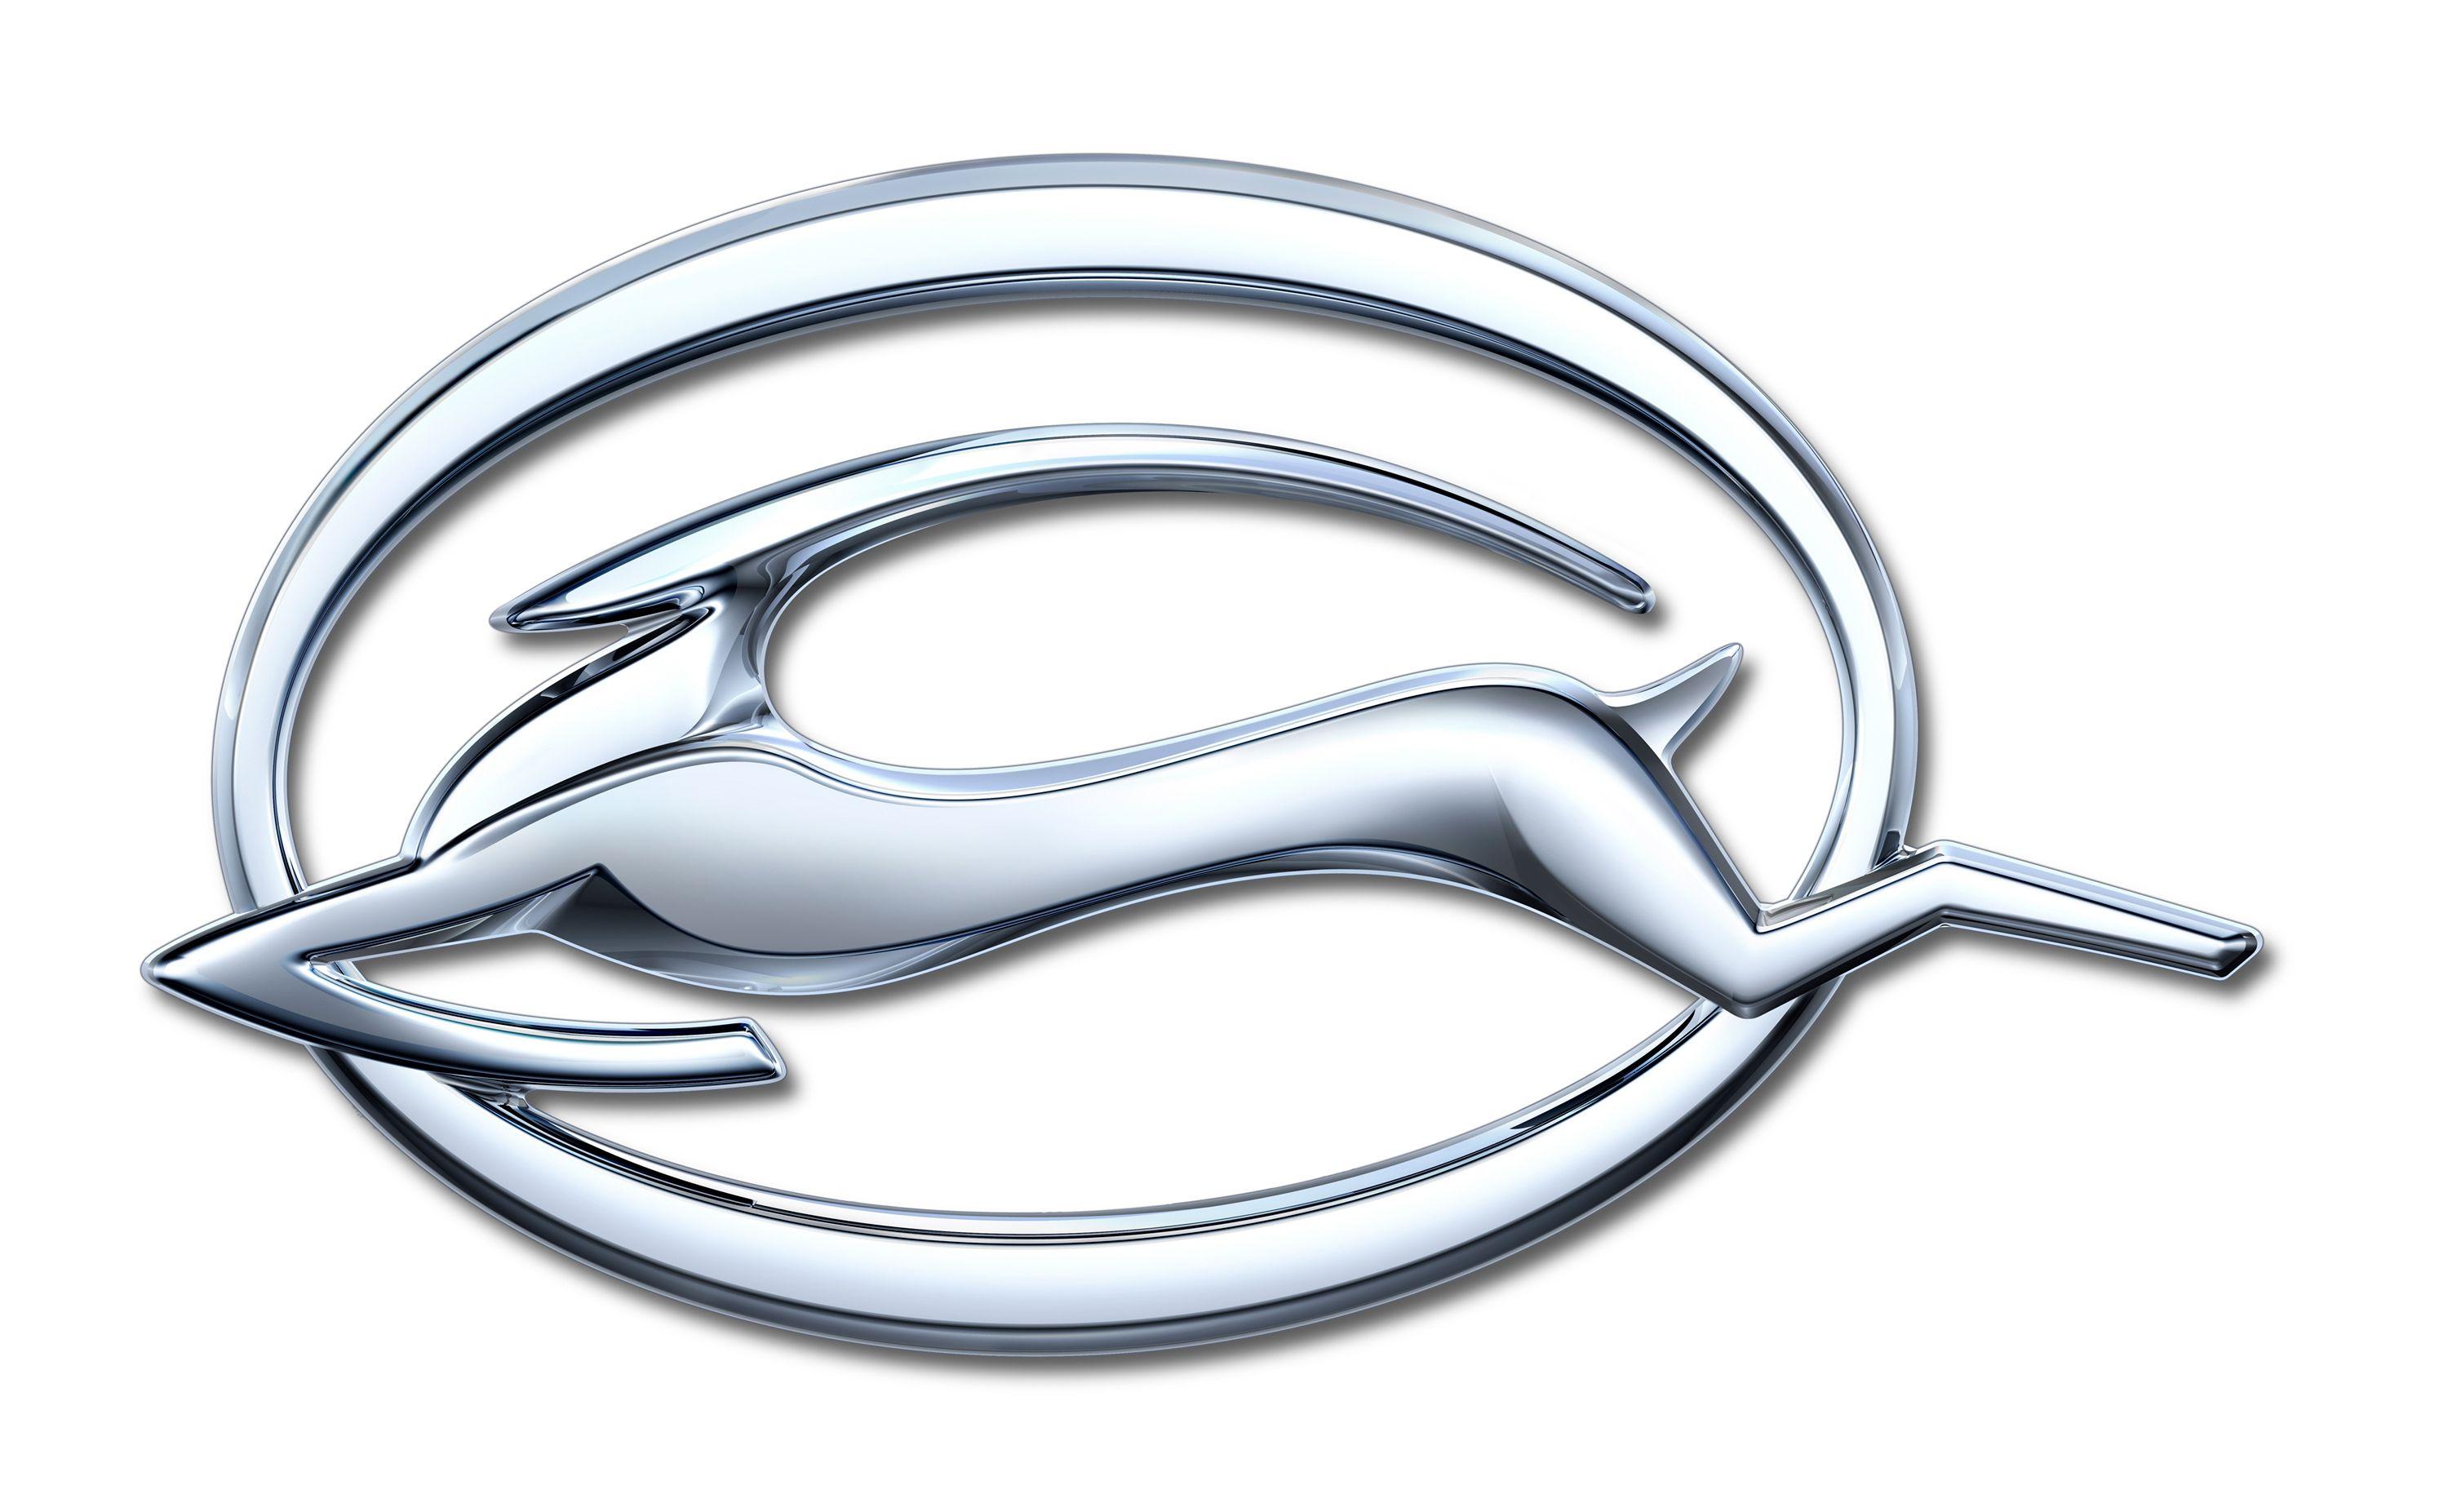 Impala SS Logo - Impala Emblem Design Leaps Forward with New Model